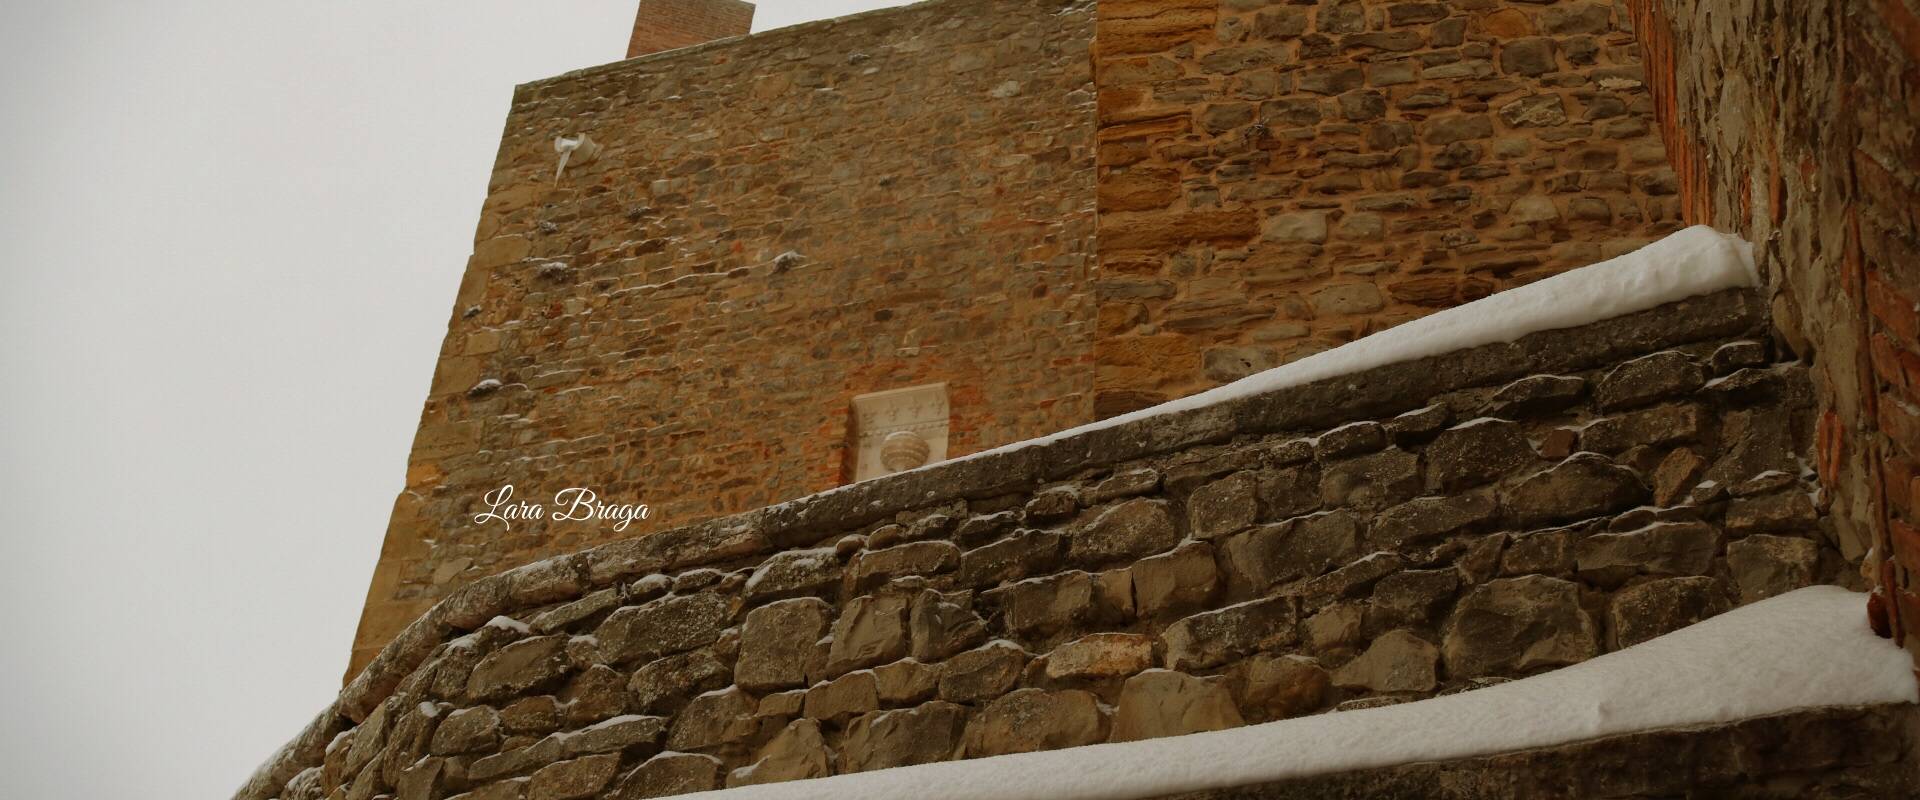 La Rocca e la magia della neve11 foto di Larabraga19